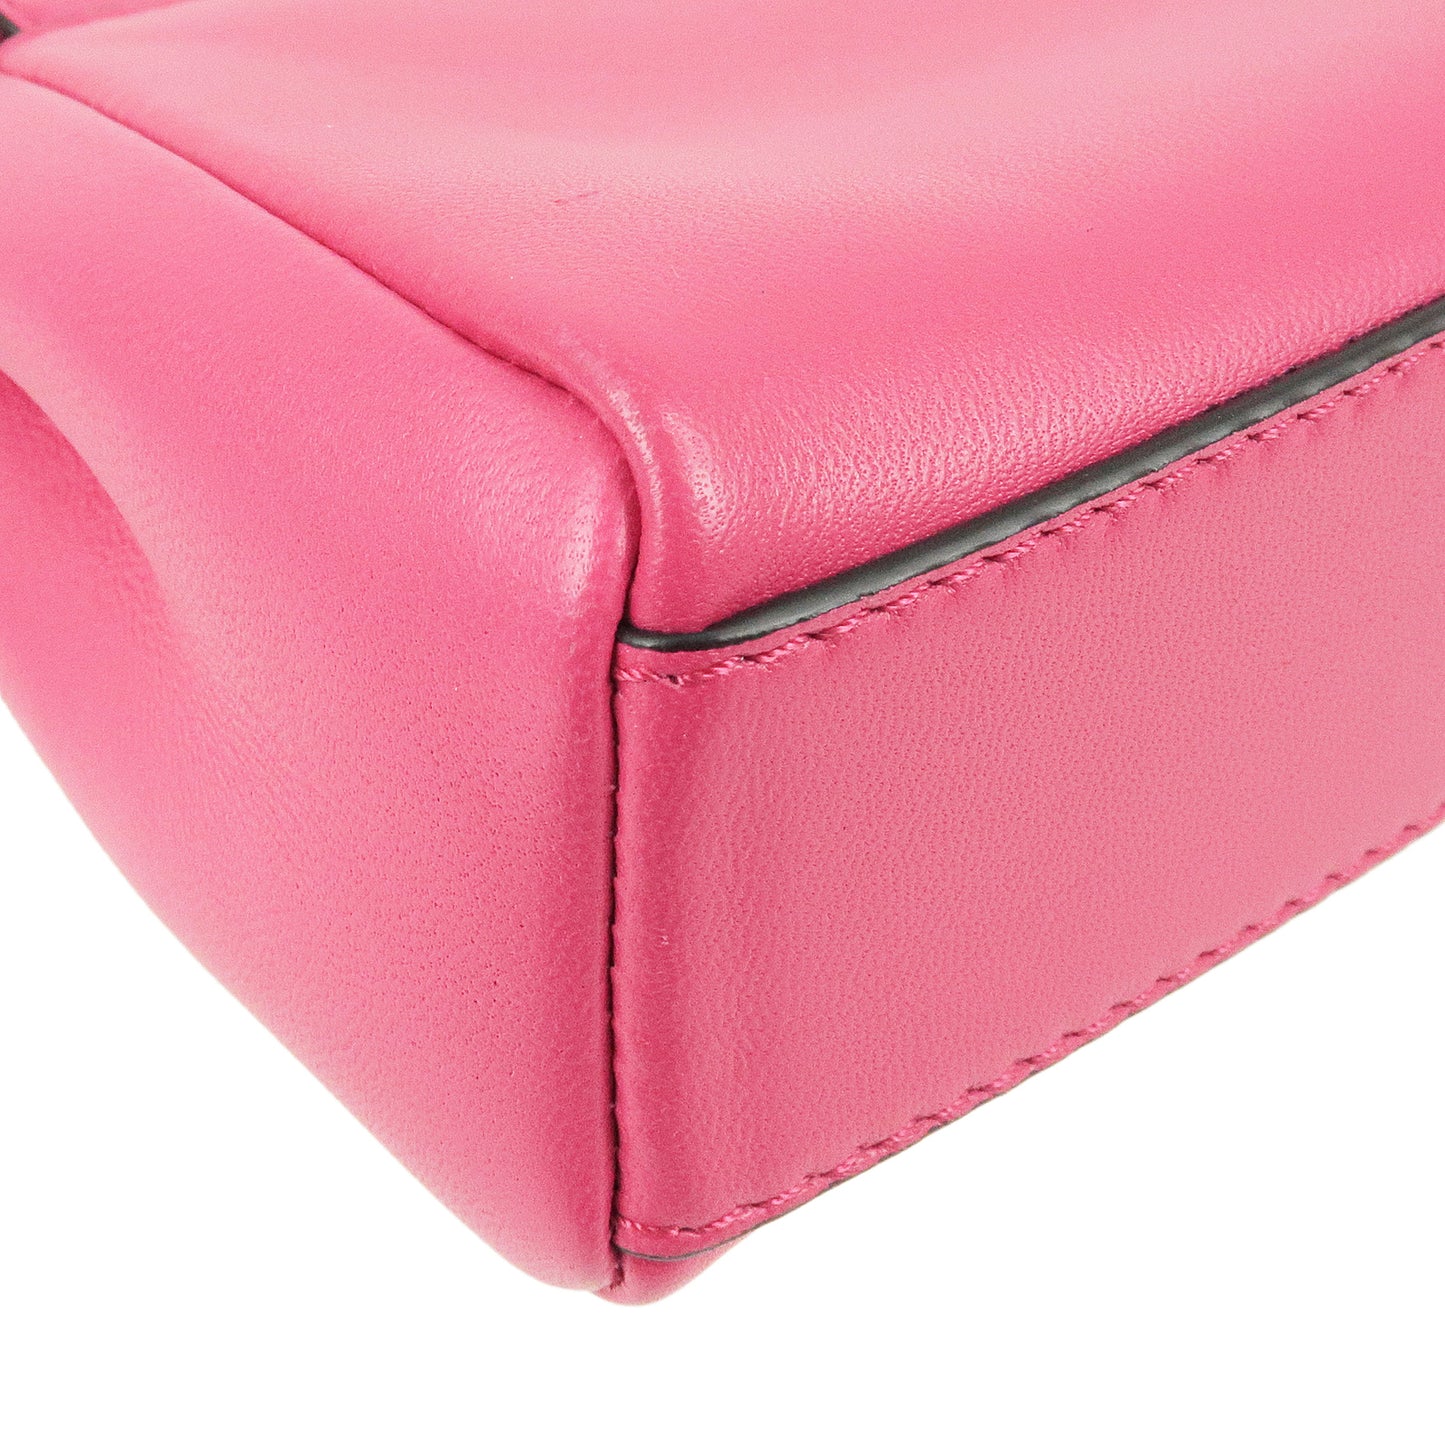 Fendi Yellow Nappa Leather Micro Peekaboo Bag 8m0355